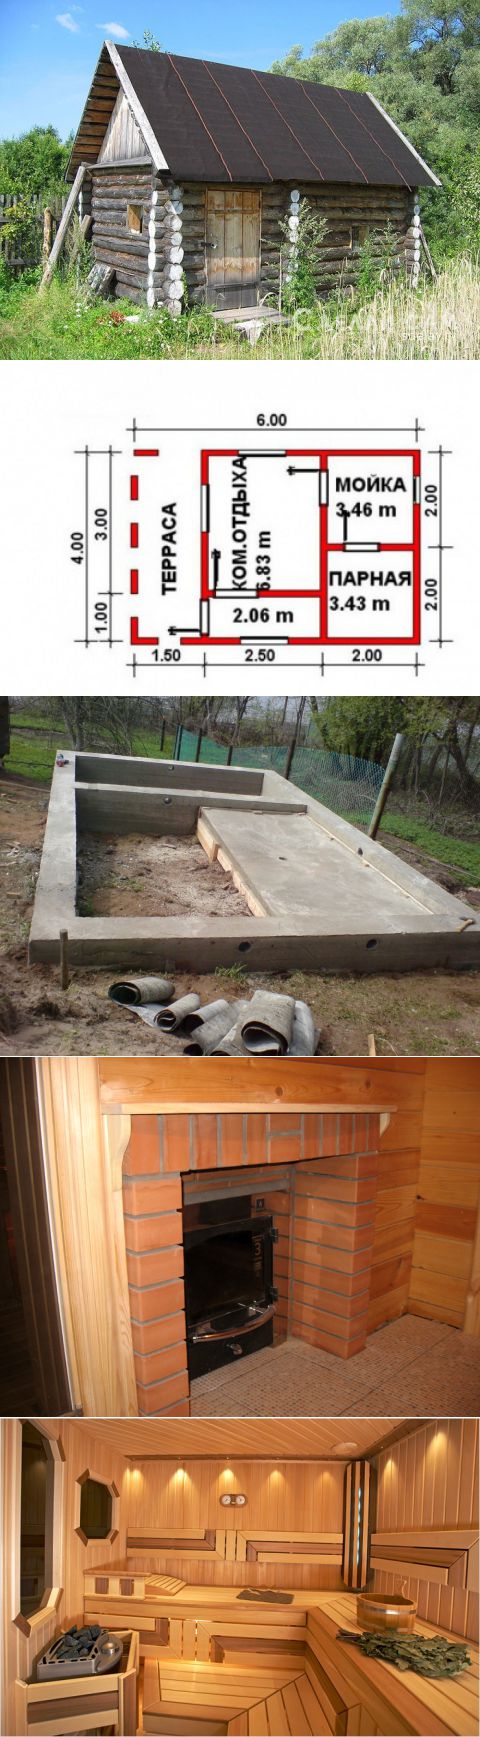 Самостоятельное строительство бани: пошаговая инструкция